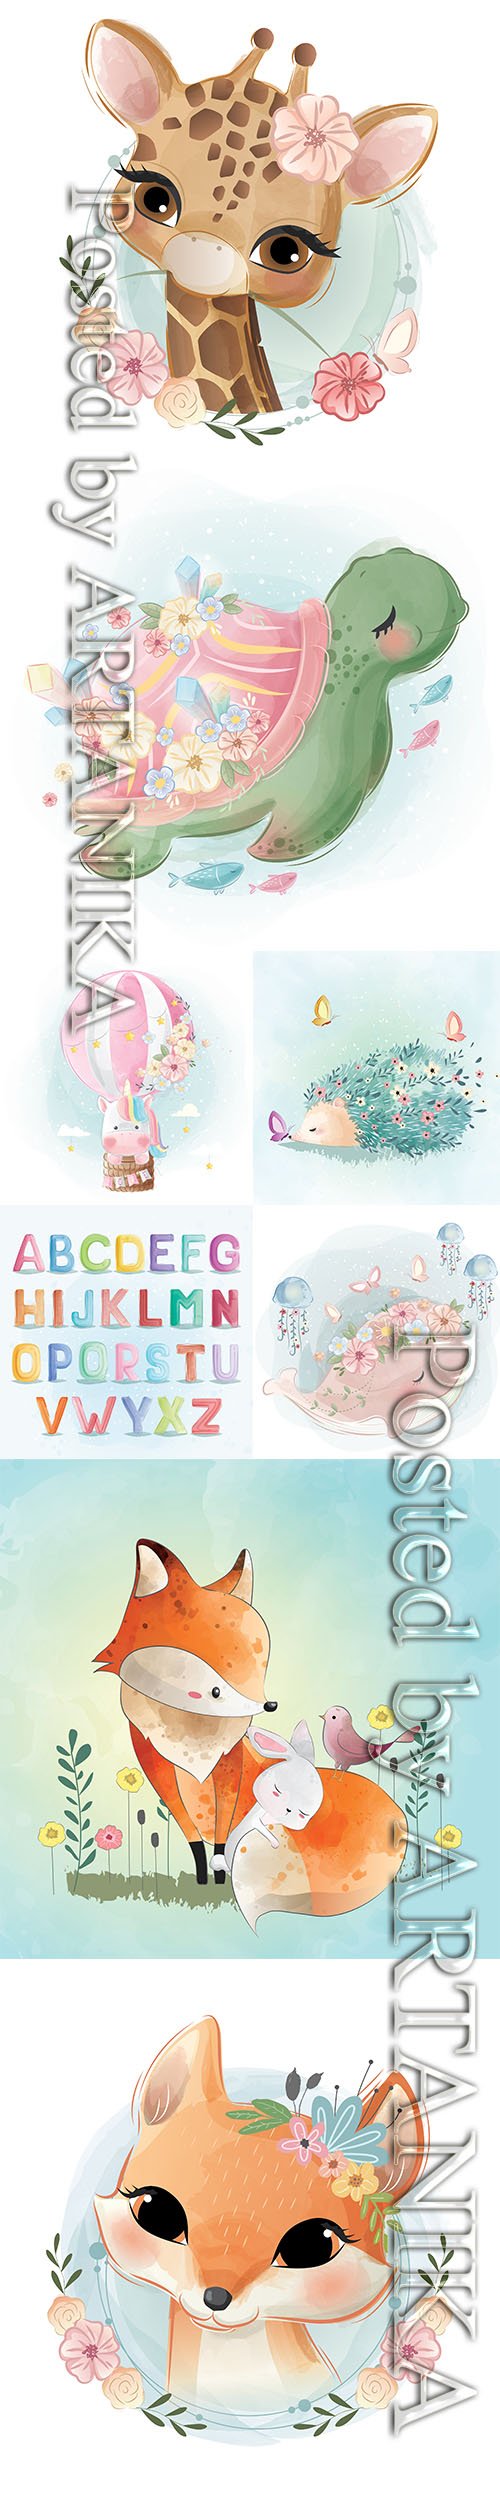 Cute Adorable Illustrations Vector Set vol.7